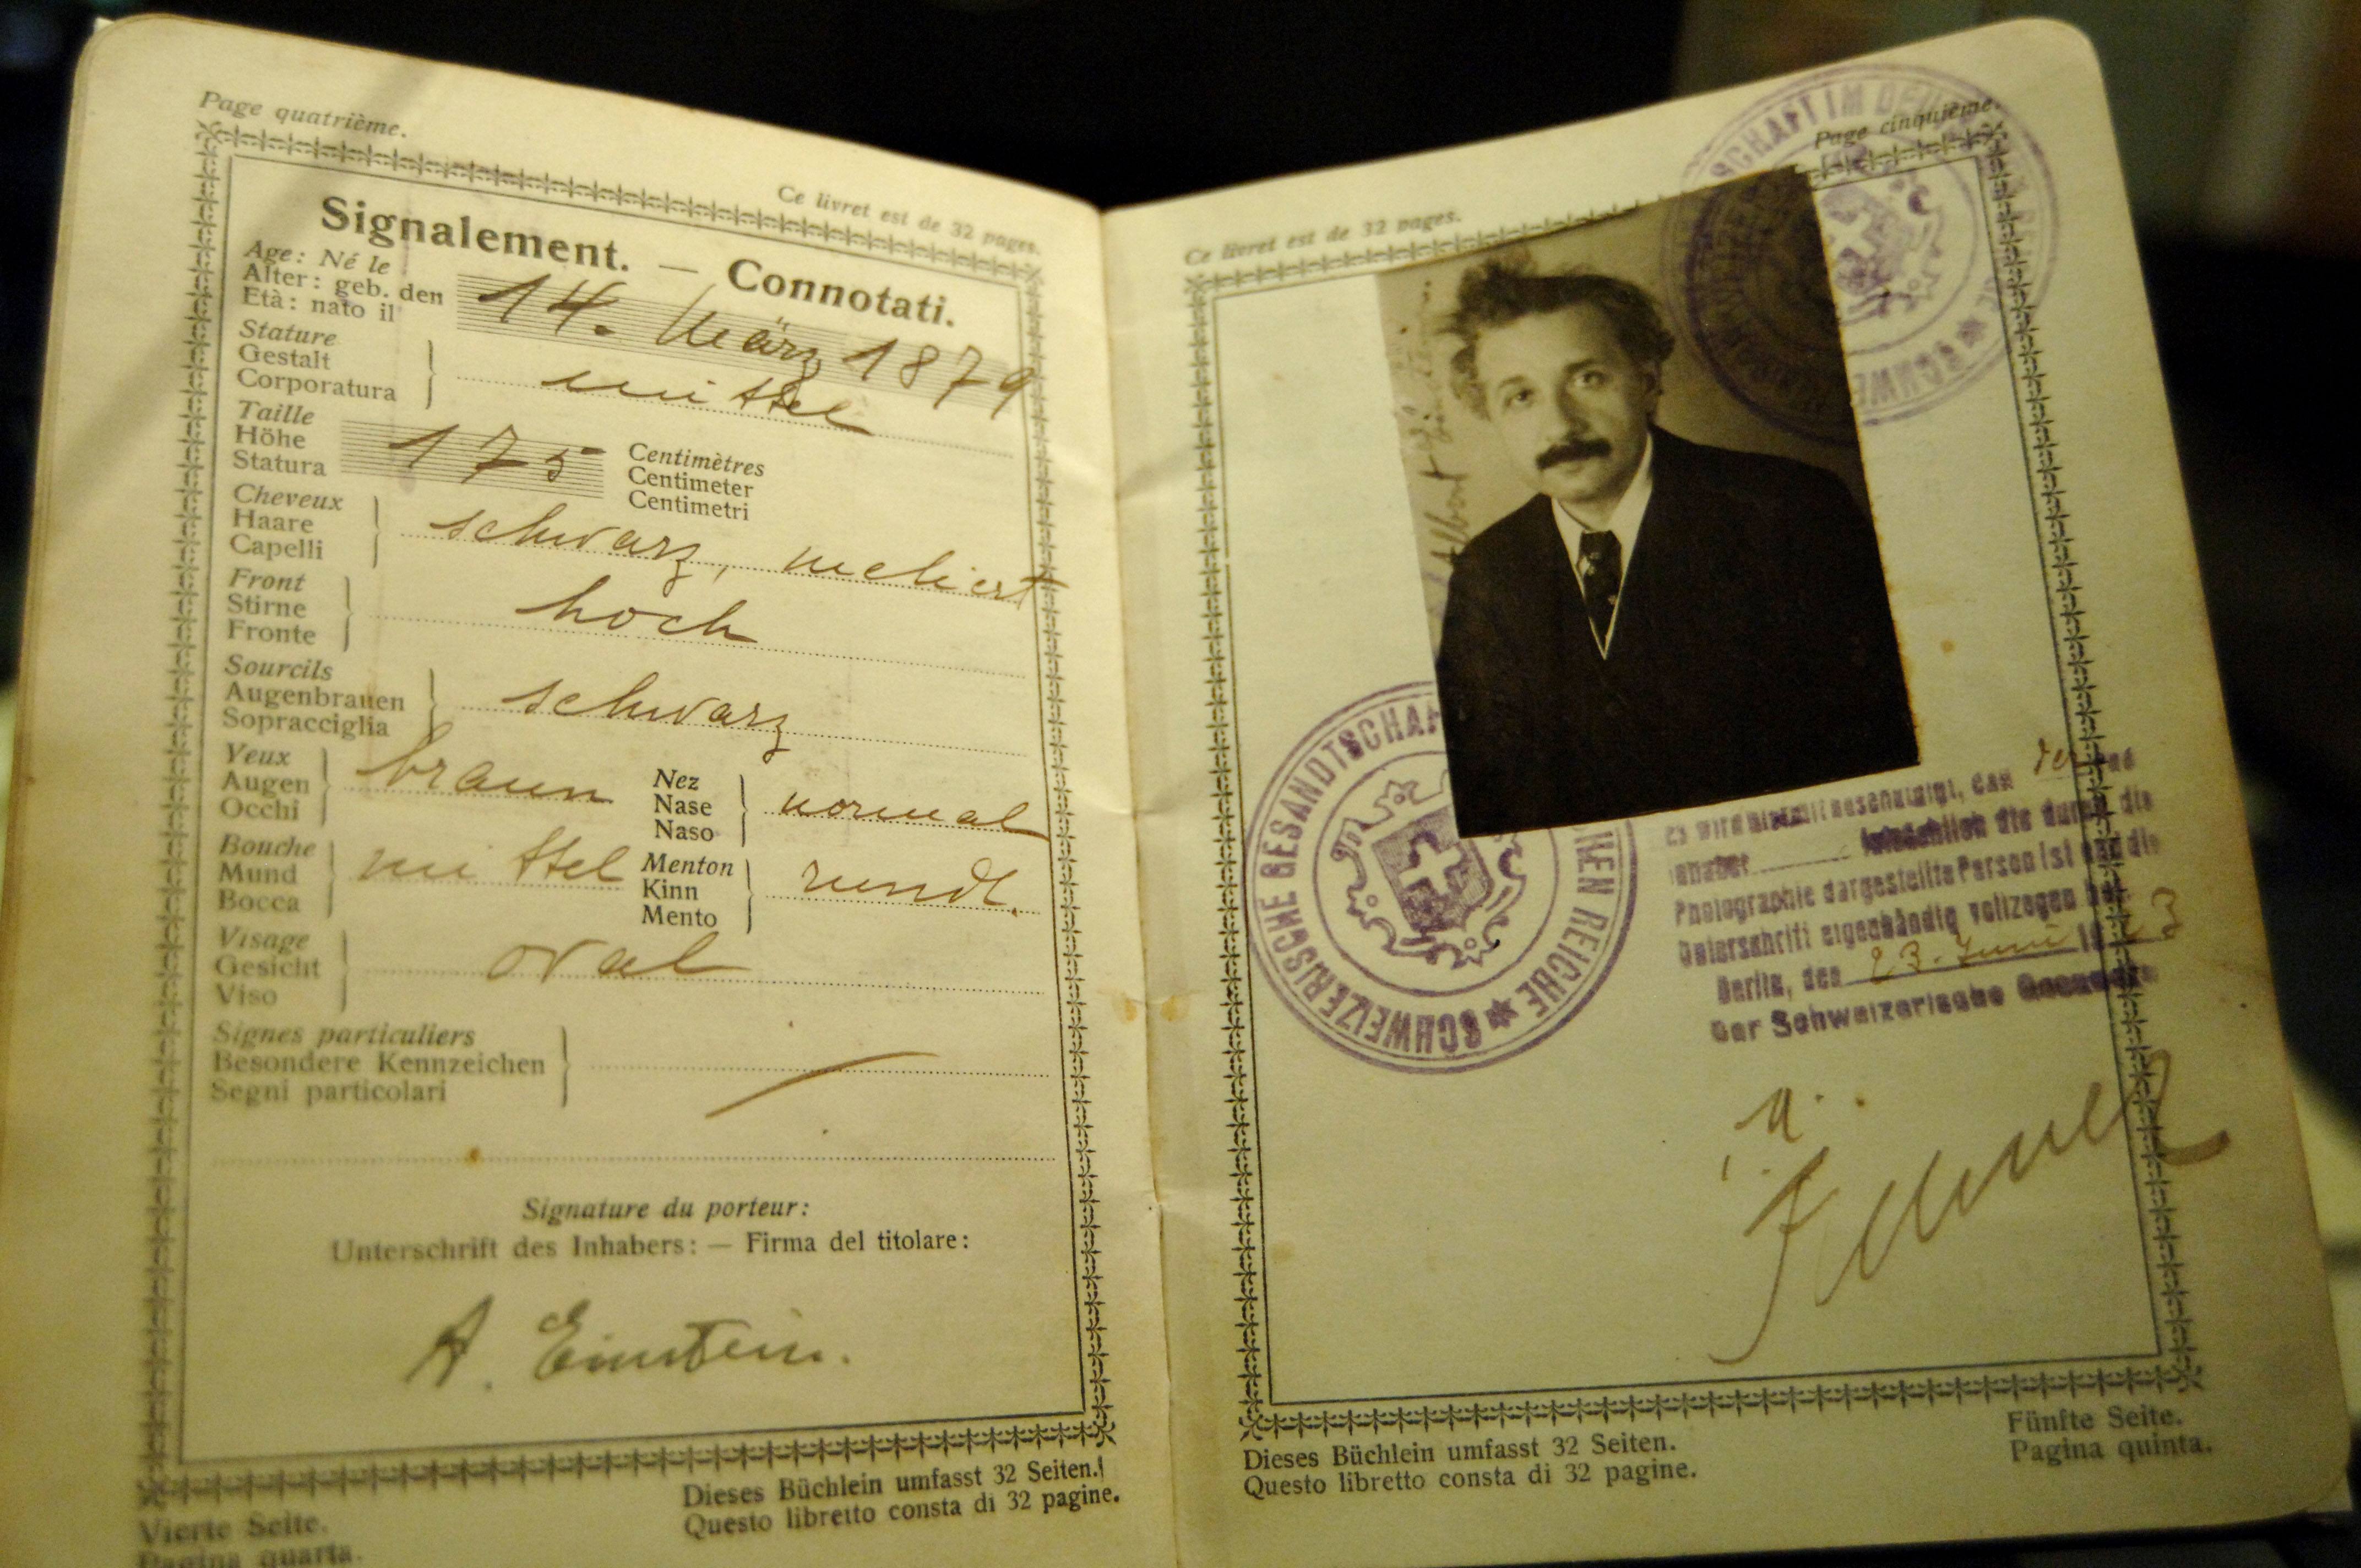 Photo of Albert Einstein's original passport